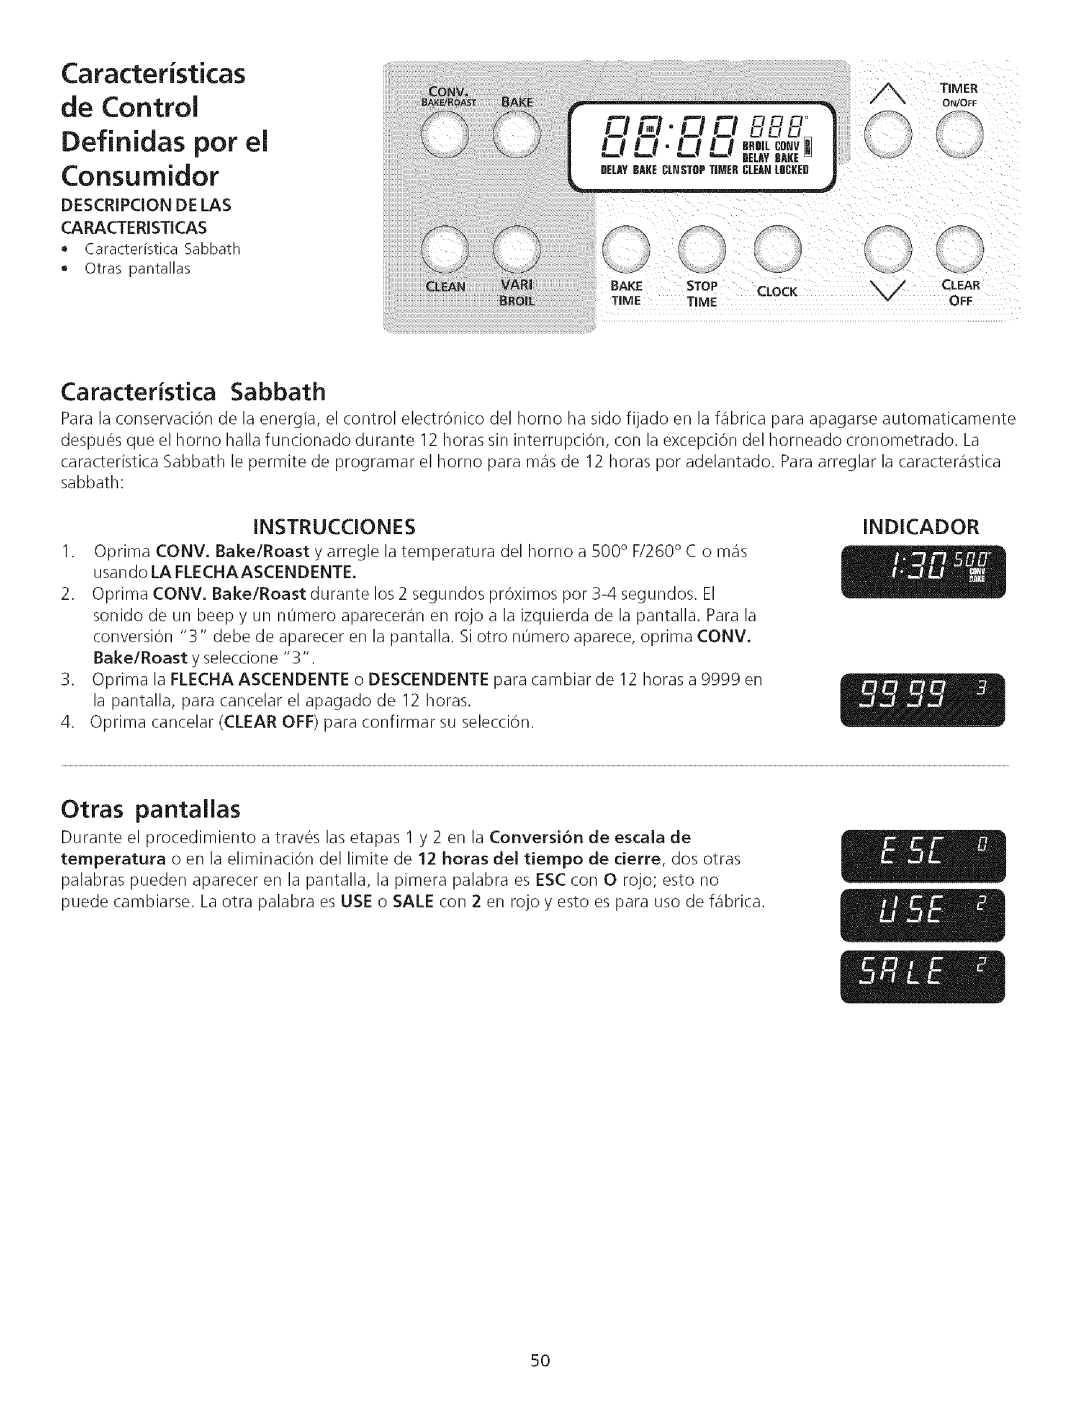 Kenmore 790.75503 manual Definidas pot el Consumidor, CaracterJstJcas de Control, Otras pantallas, Instrucciones, Indicador 